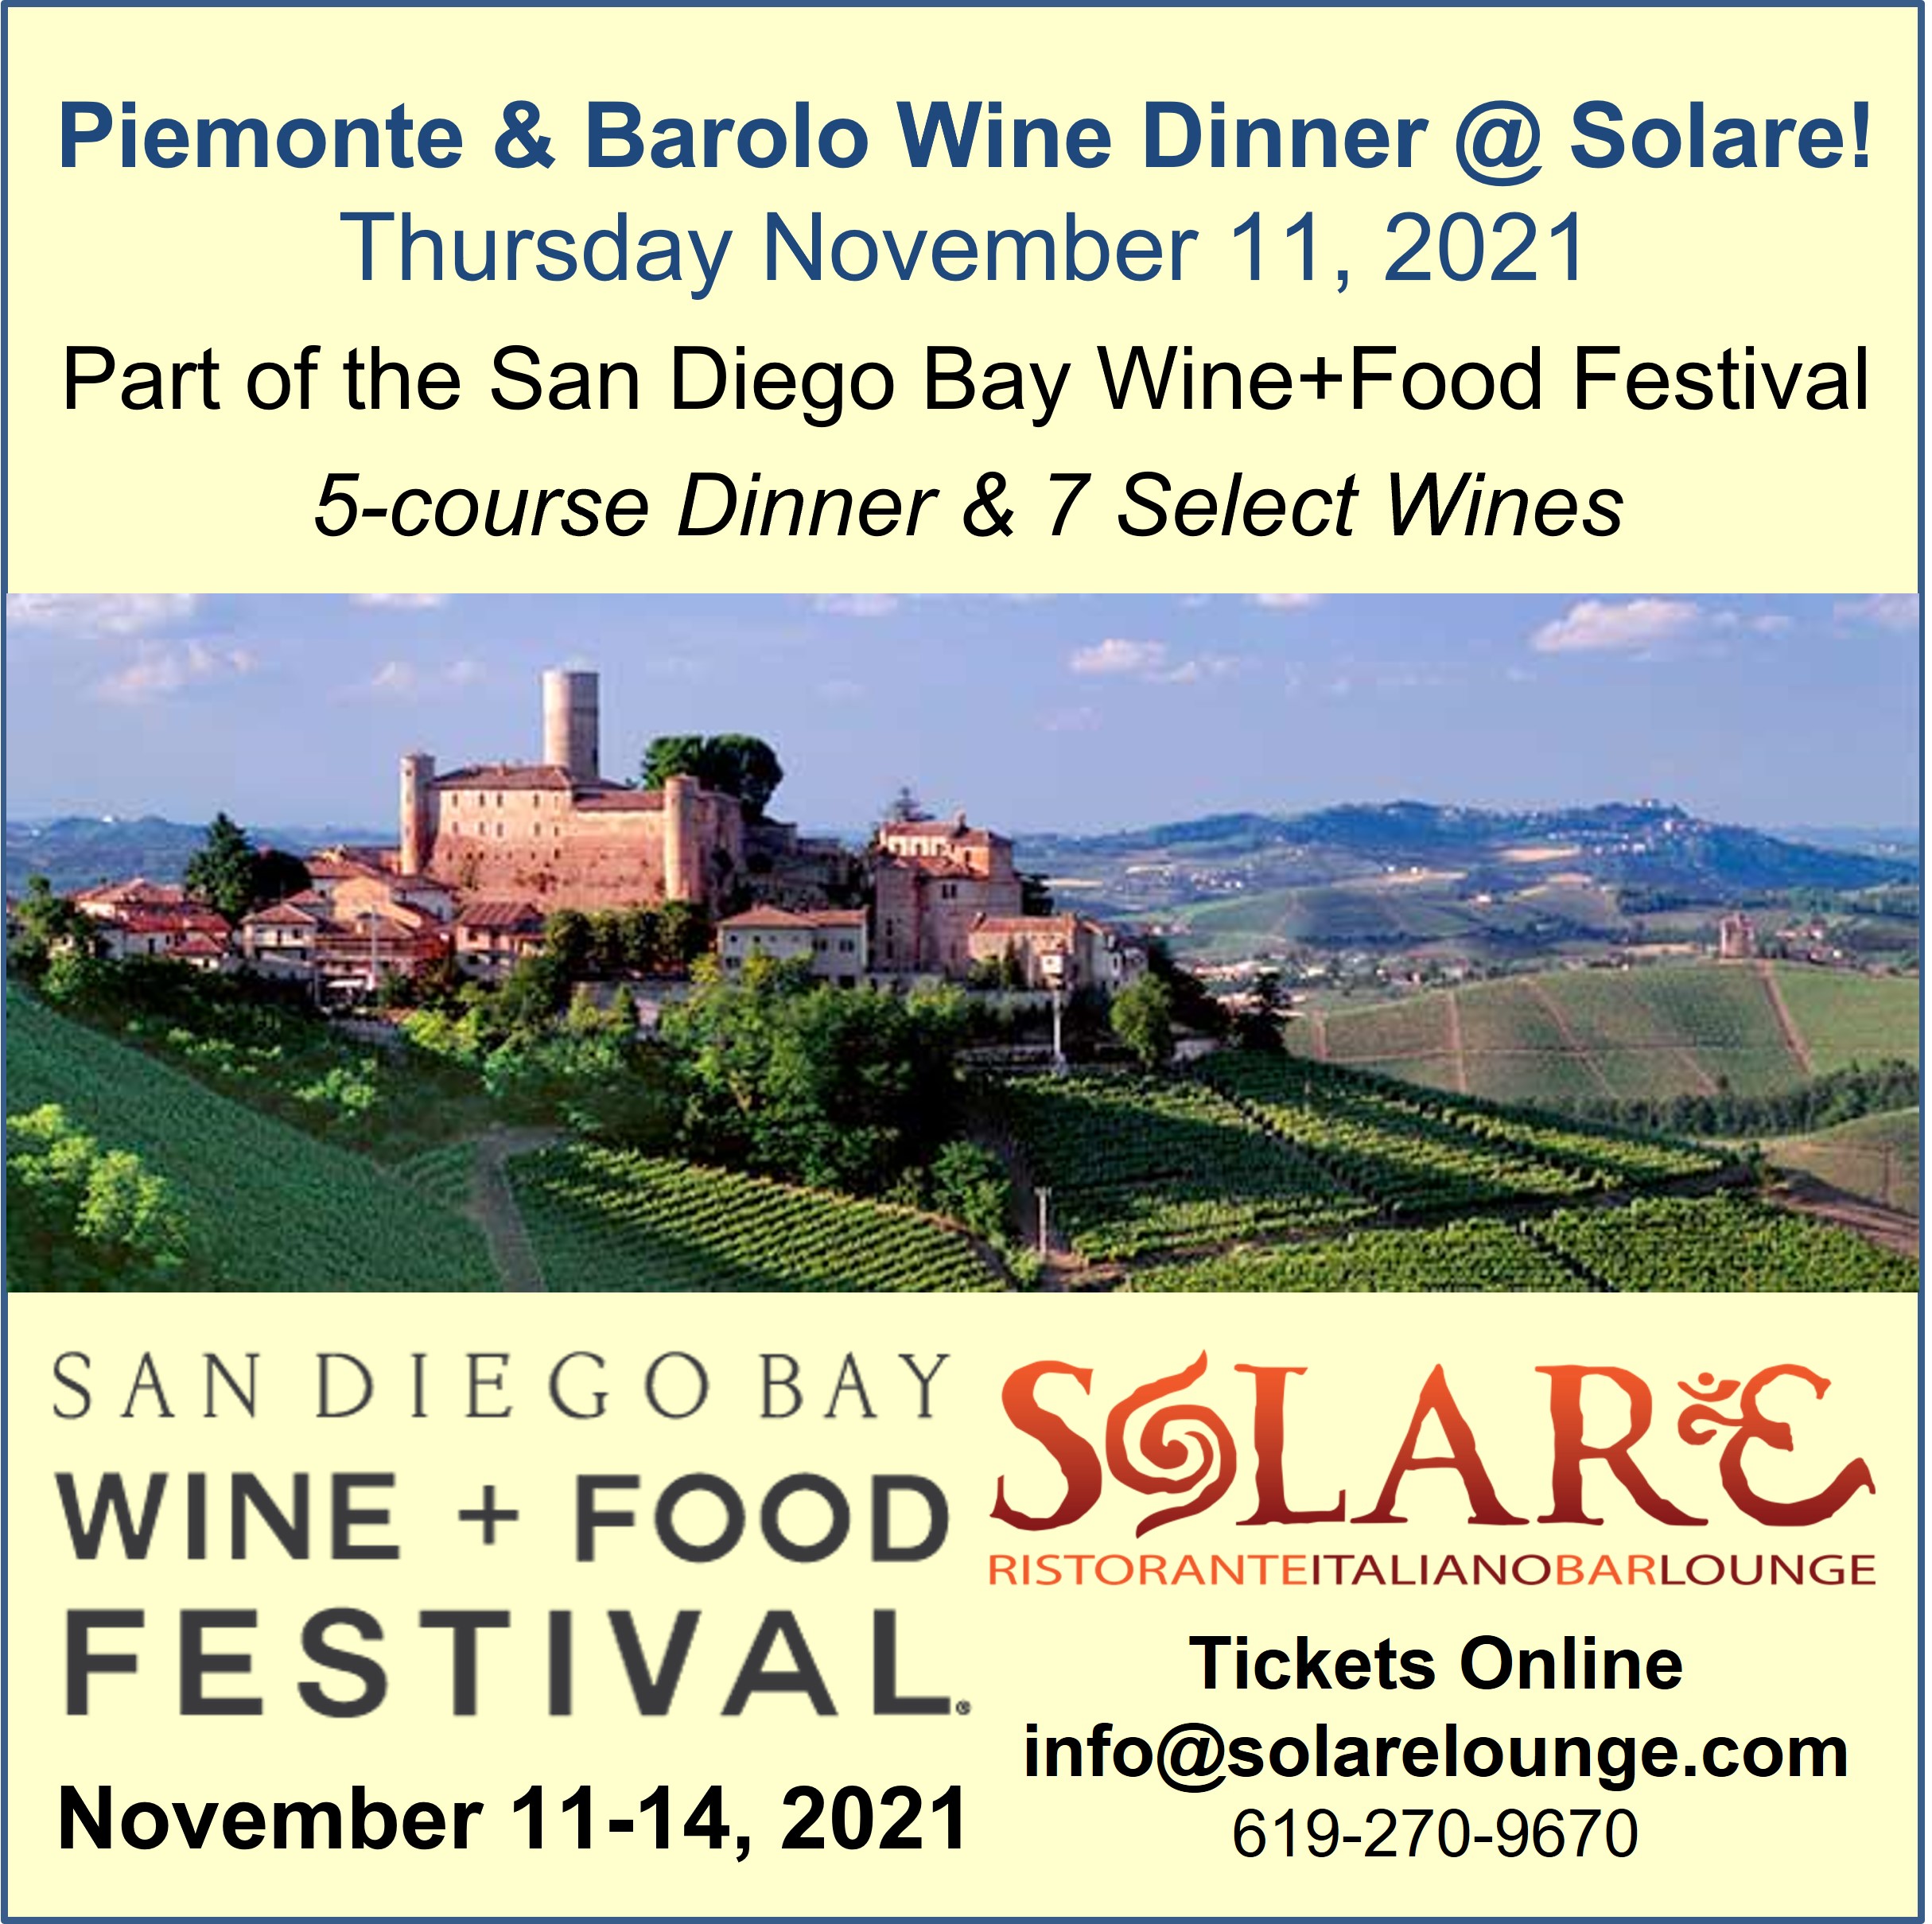 <a id="Solare-Piemonte-Barolo-Wine-Dinner"></a>San Diego Bay Wine+Food Festival Dinner @ Solare Ristorante!  A Grand Evening in Piemonte with Barolo and Barbaresco